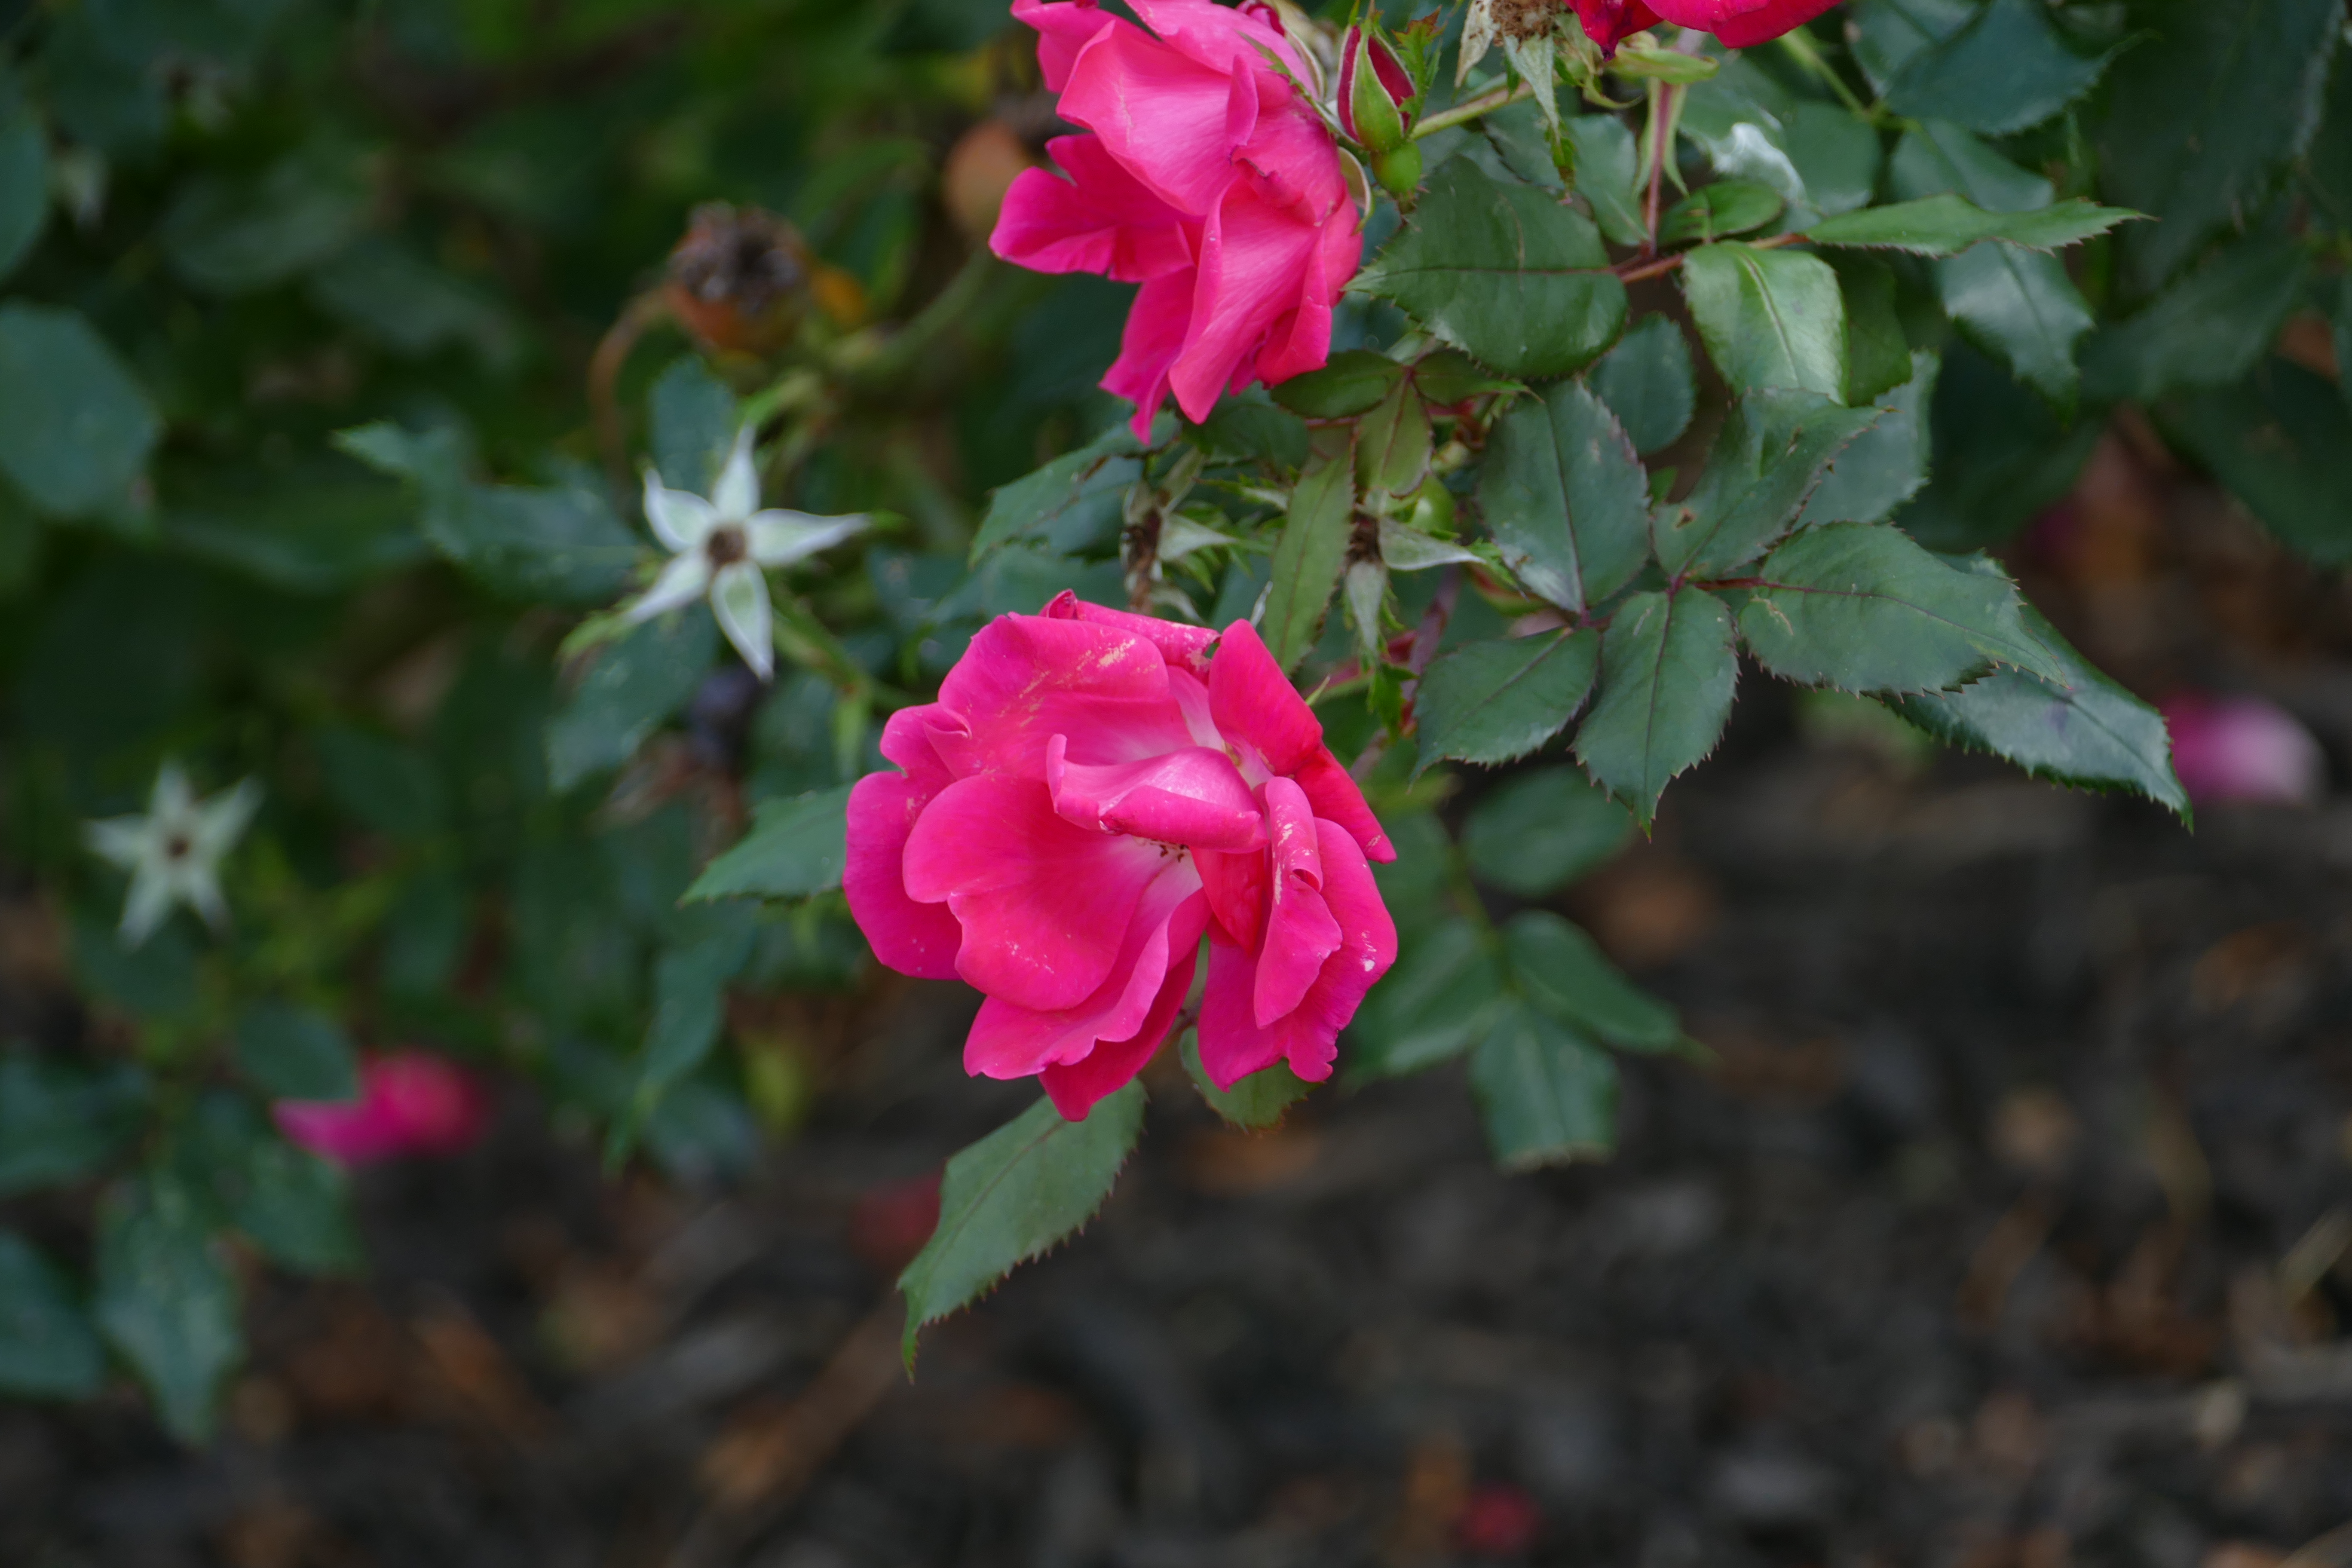 File:Rose Leaf.jpg - Wikipedia